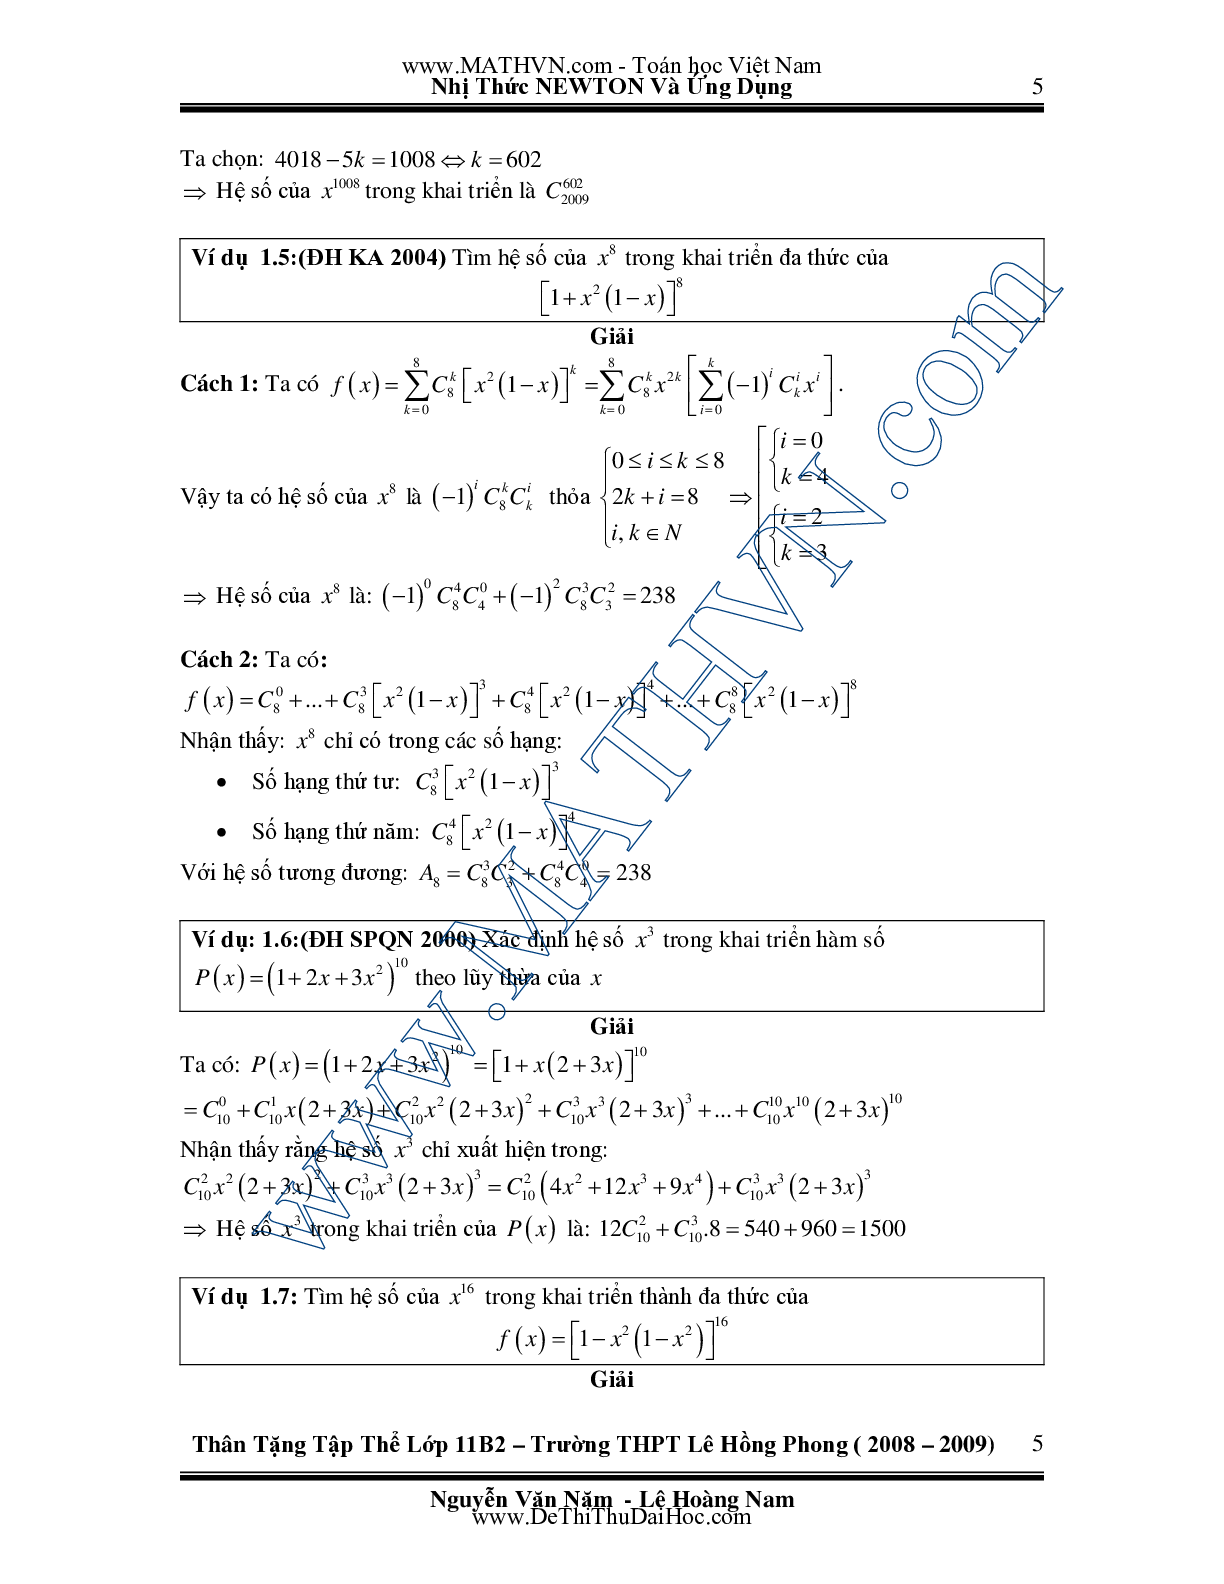 Chuyên đề Nhị thức Newton và ứng dụng môn Toán lớp 11 (trang 5)